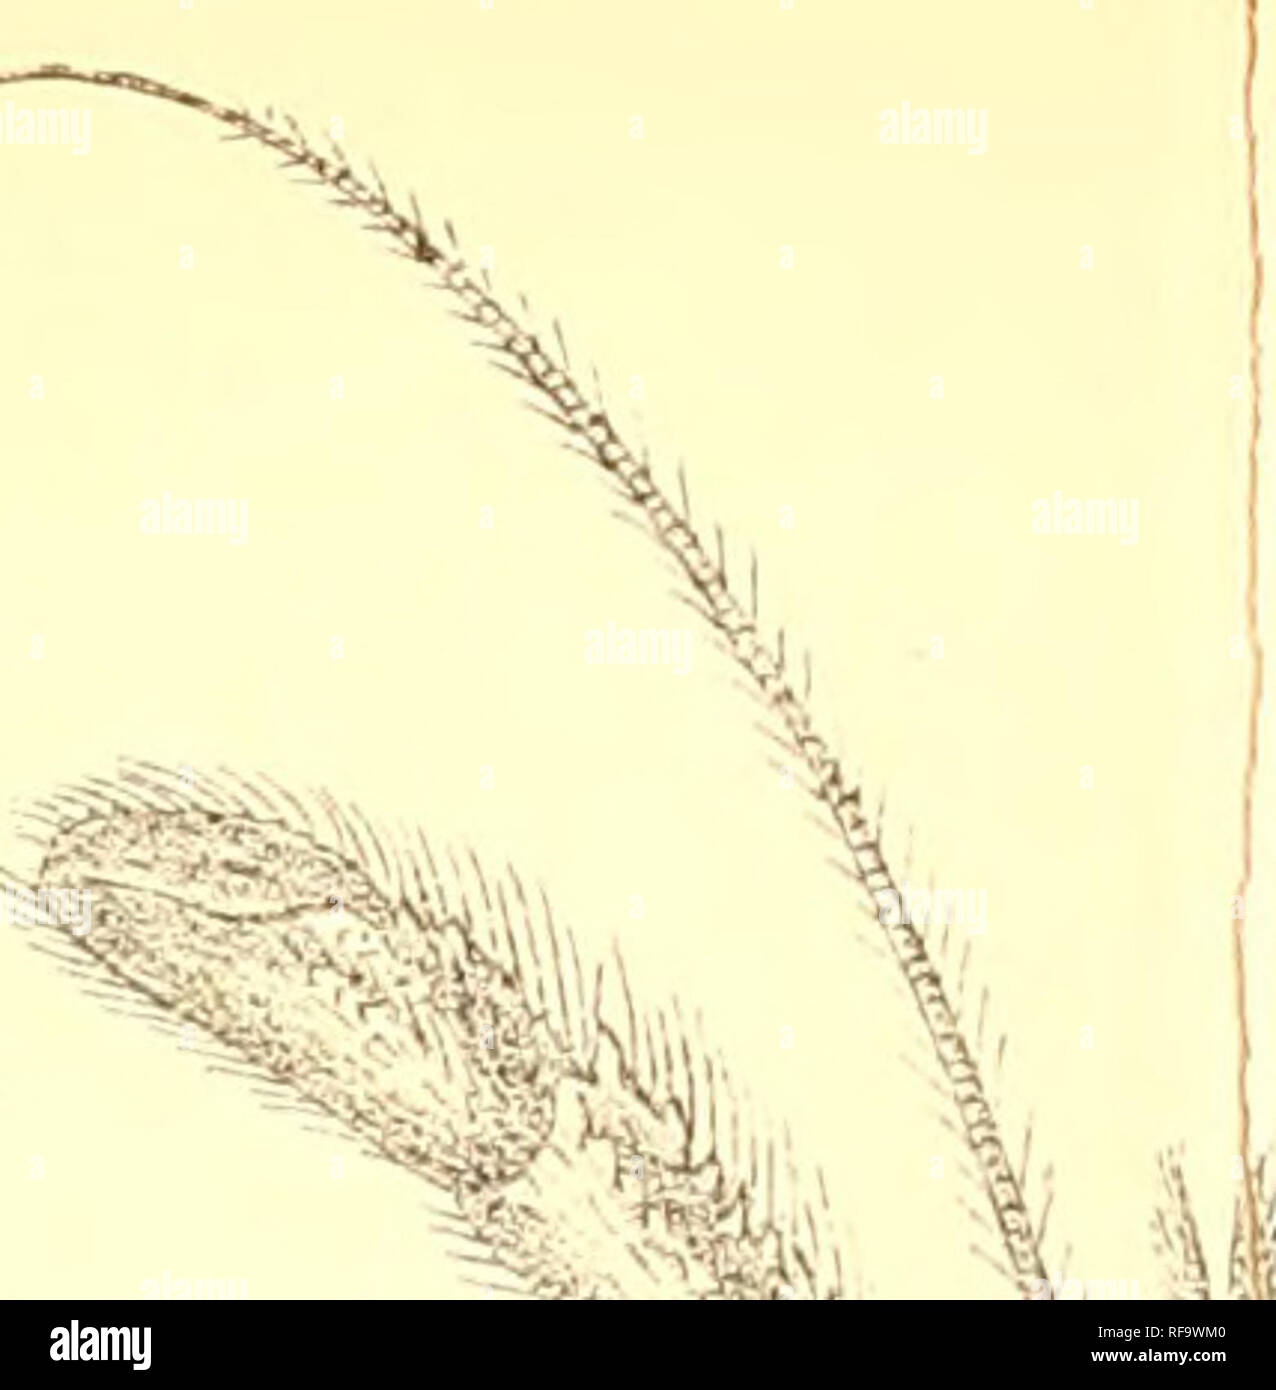 . Catalogo della Indian decapod Crustacea nella collezione del Museo Indiano ... Decapoda (crostacei). ^ '':U4i â"¢&GT;sy ' J %.= â &LT;Â"K". -.S^^^- 'jLiiZ:^ '-n g*^ #' 4 '7/. Si prega di notare che queste immagini vengono estratte dalla pagina sottoposta a scansione di immagini che possono essere state migliorate digitalmente per la leggibilità - Colorazione e aspetto di queste illustrazioni potrebbero non perfettamente assomigliano al lavoro originale. Il Museo Indiano; Alcock, A. (Alfred), 1859-1933. Calcutta, stampati in ordine di fiduciari del Museo Indiano Foto Stock